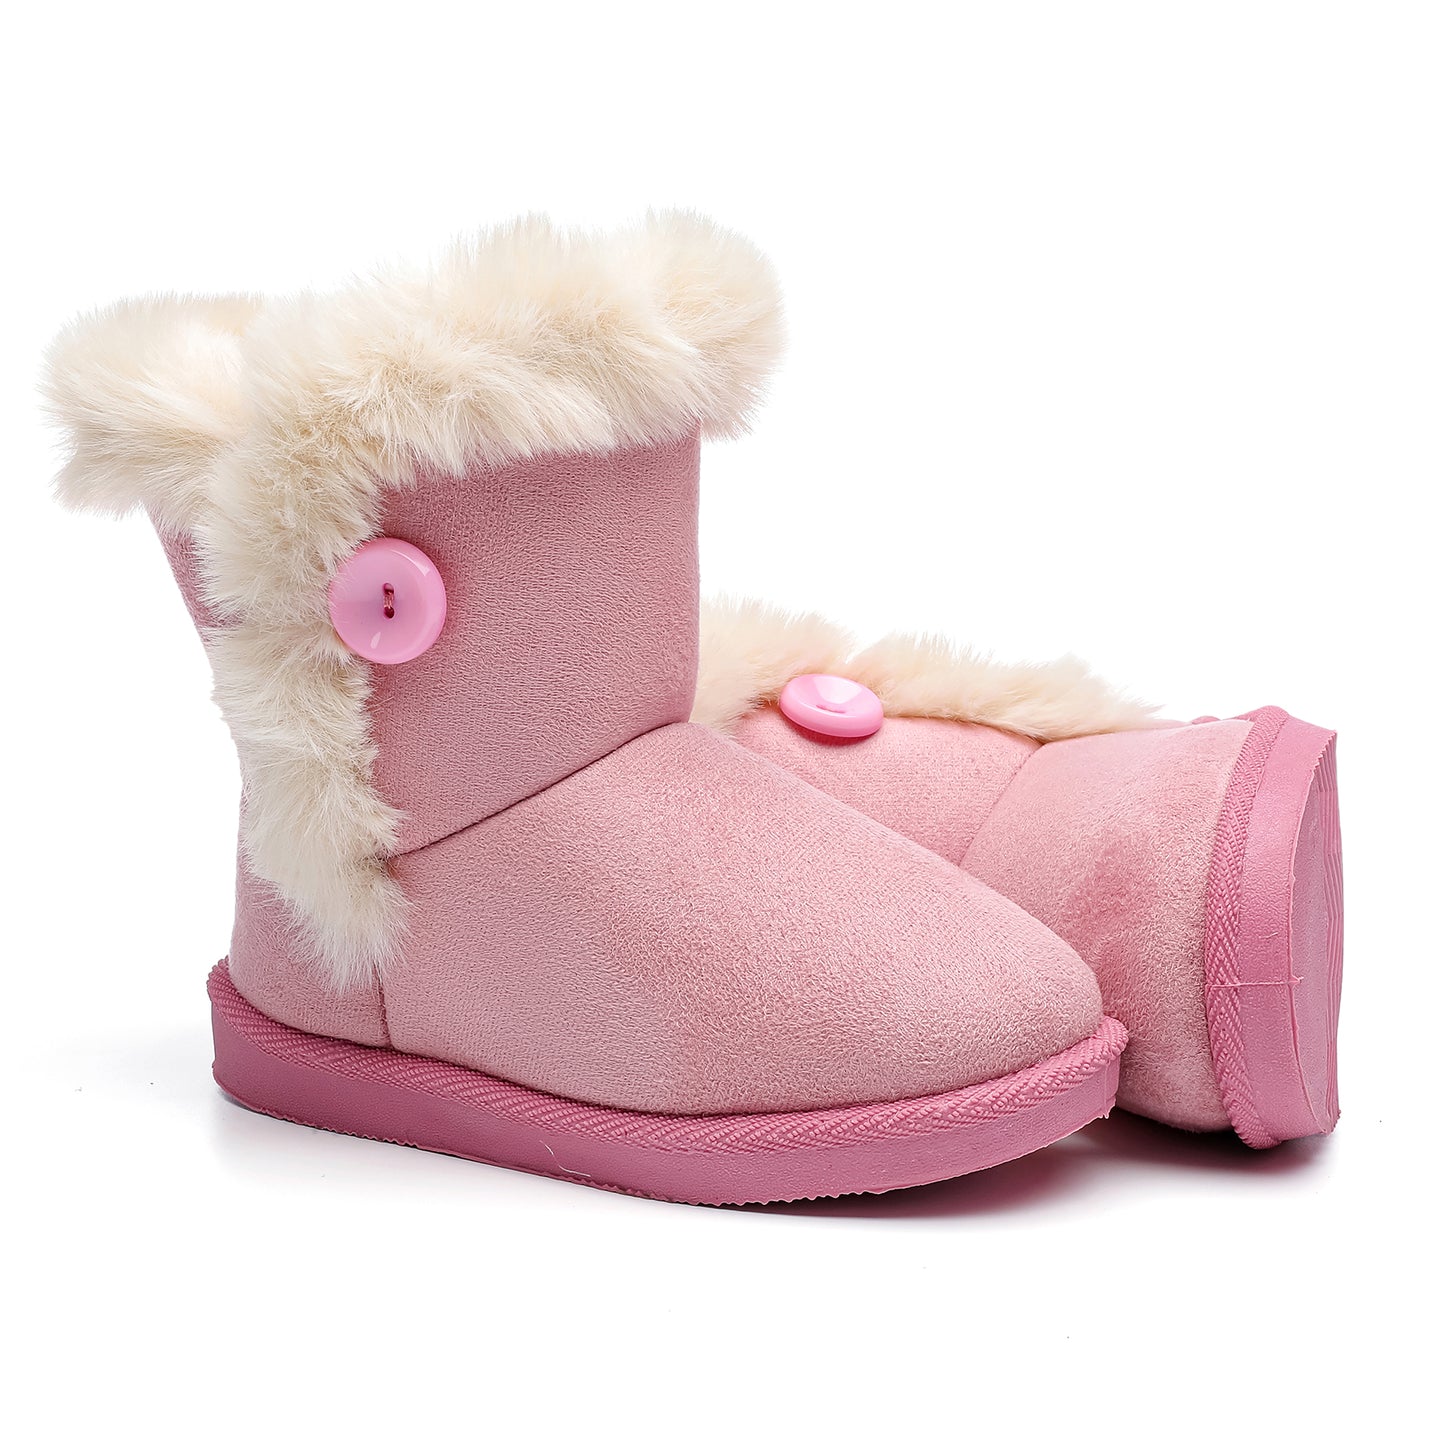 产品 Toddler Girls Boys Winter Shoes Fur Lining Snow Boots Warm Flat Shoes Outdoor Boots for Kids(Toddler/Little Kid)